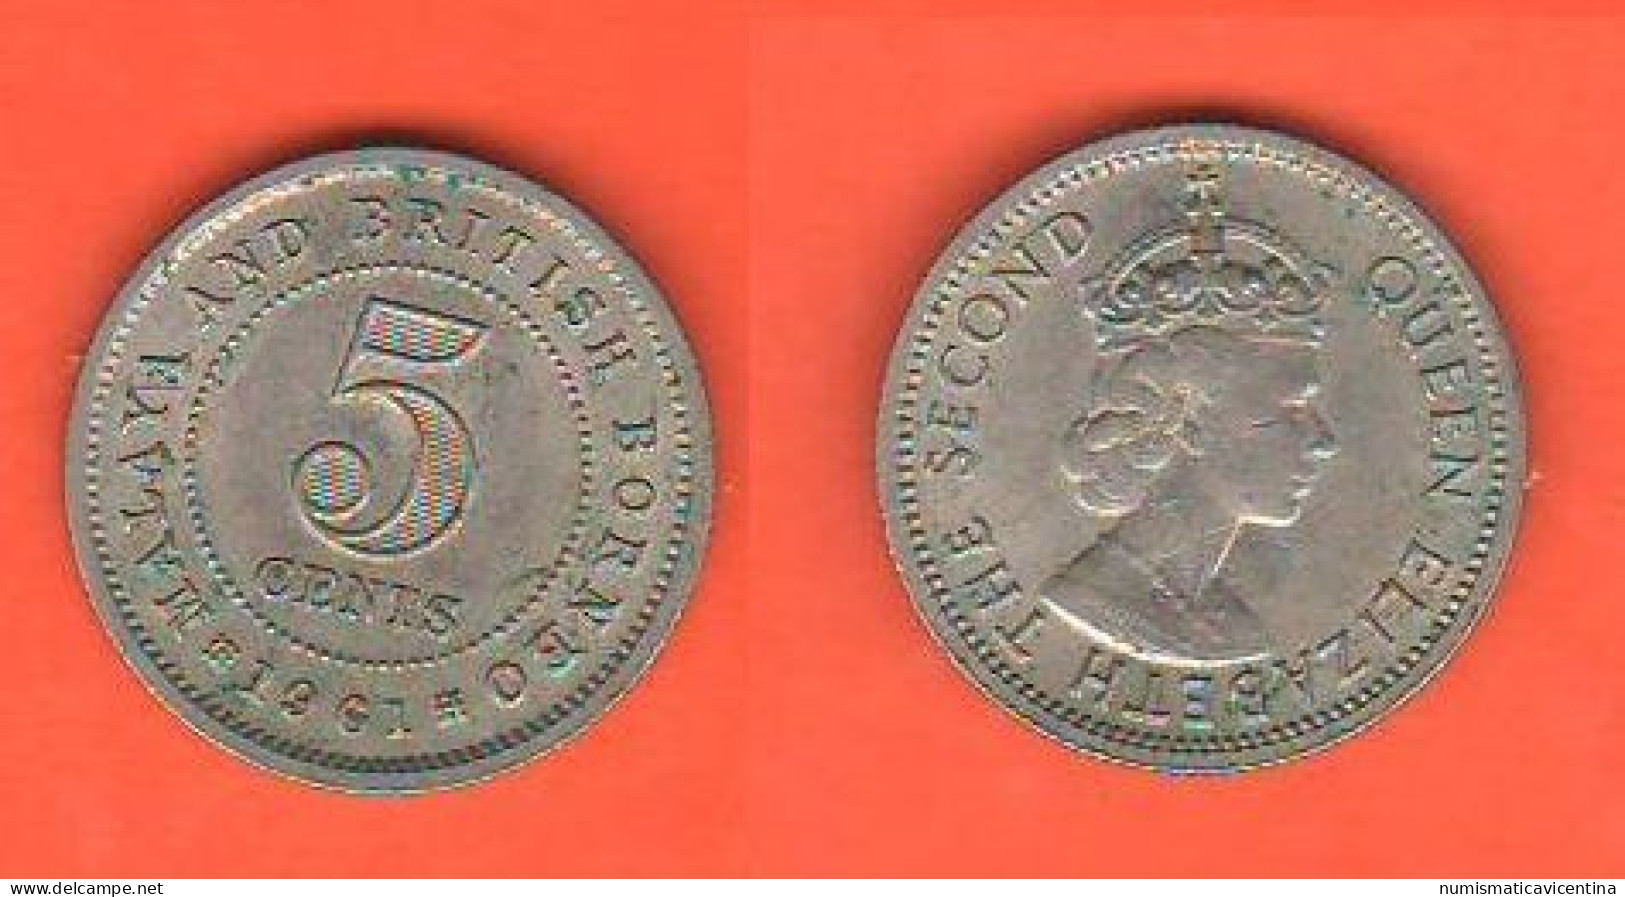 British Borneo 5 Cents 1961 Borneo Britannico Nickel Coin Malesia Malaysia   C 3 - Colonies